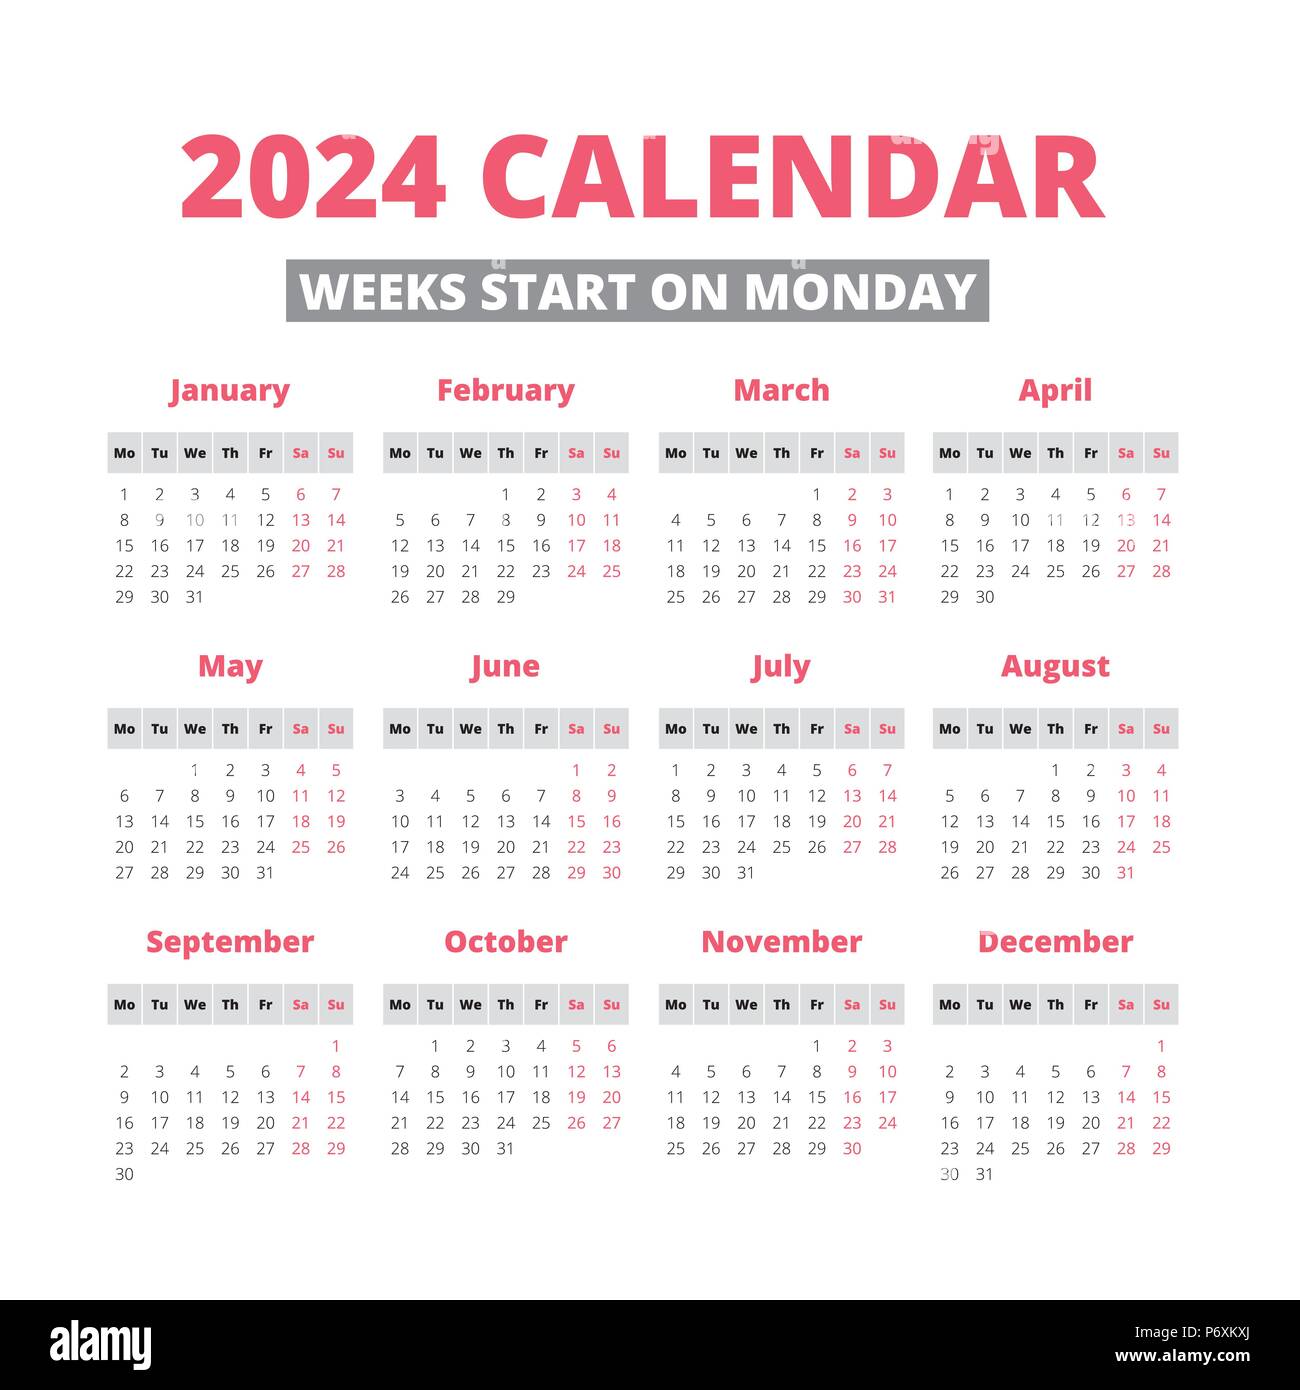 2024 calendrier Banque de photographies et d’images à haute résolution